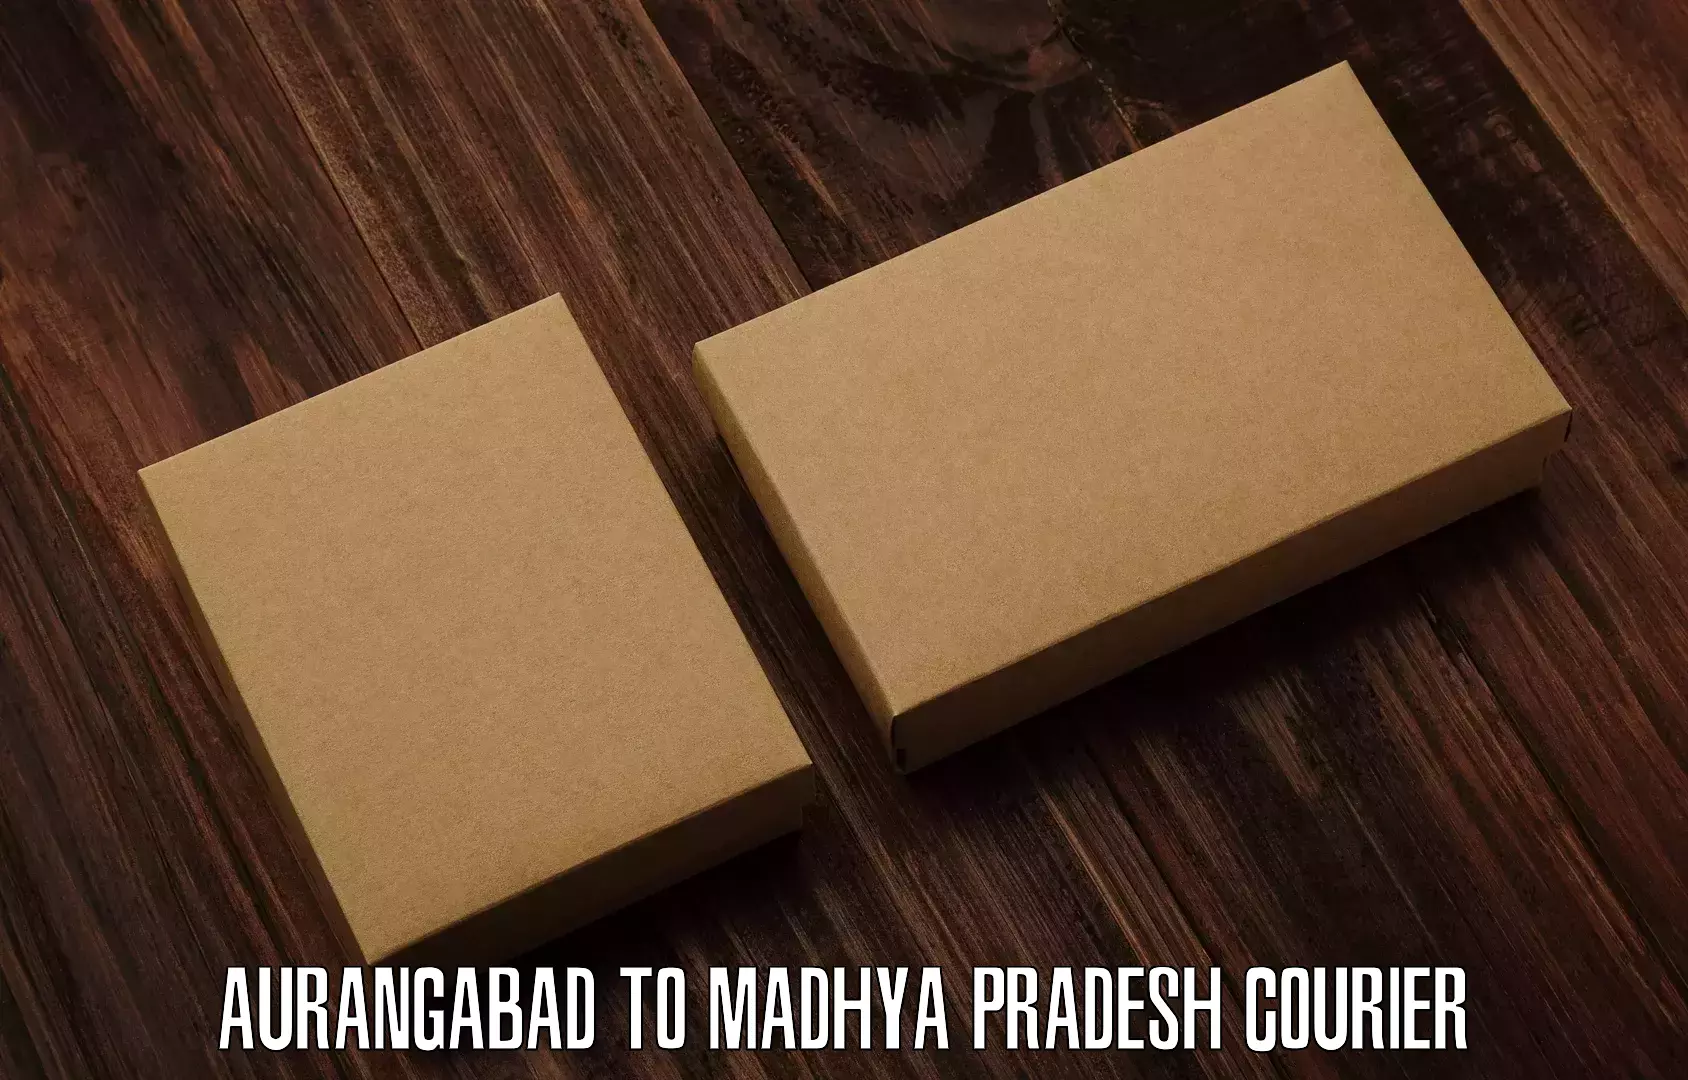 Large package courier in Aurangabad to Ganj Basoda